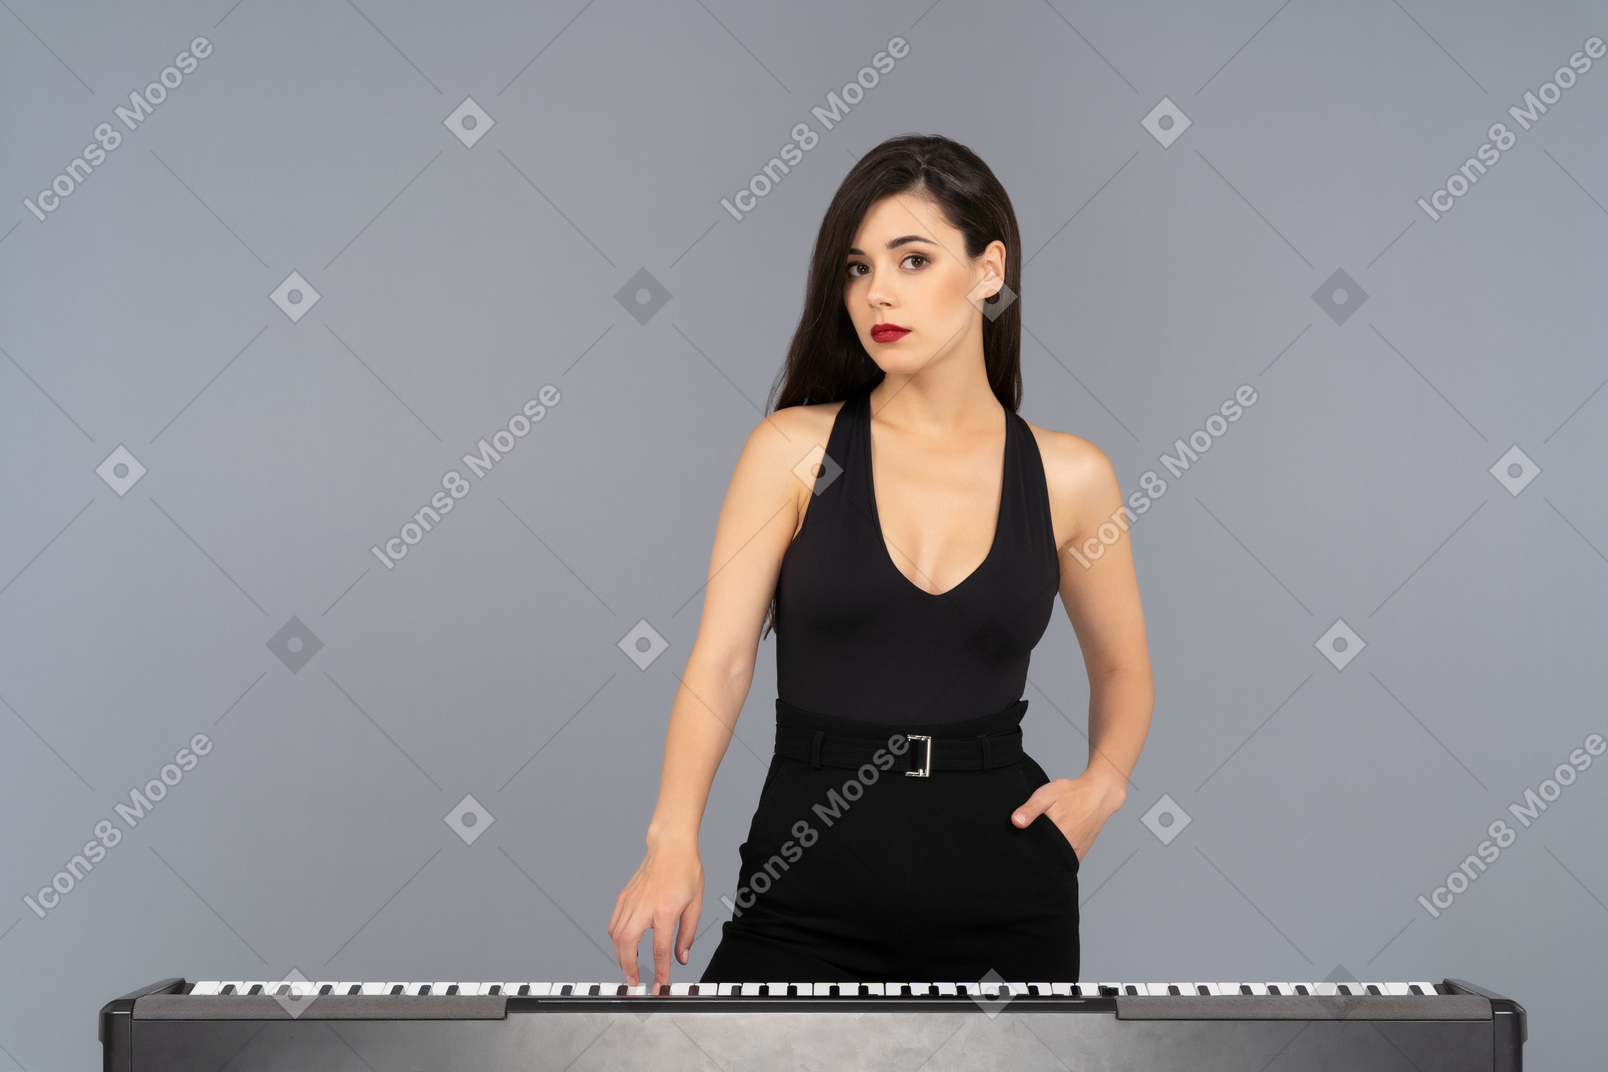 Beautiful woman posing next to a piano